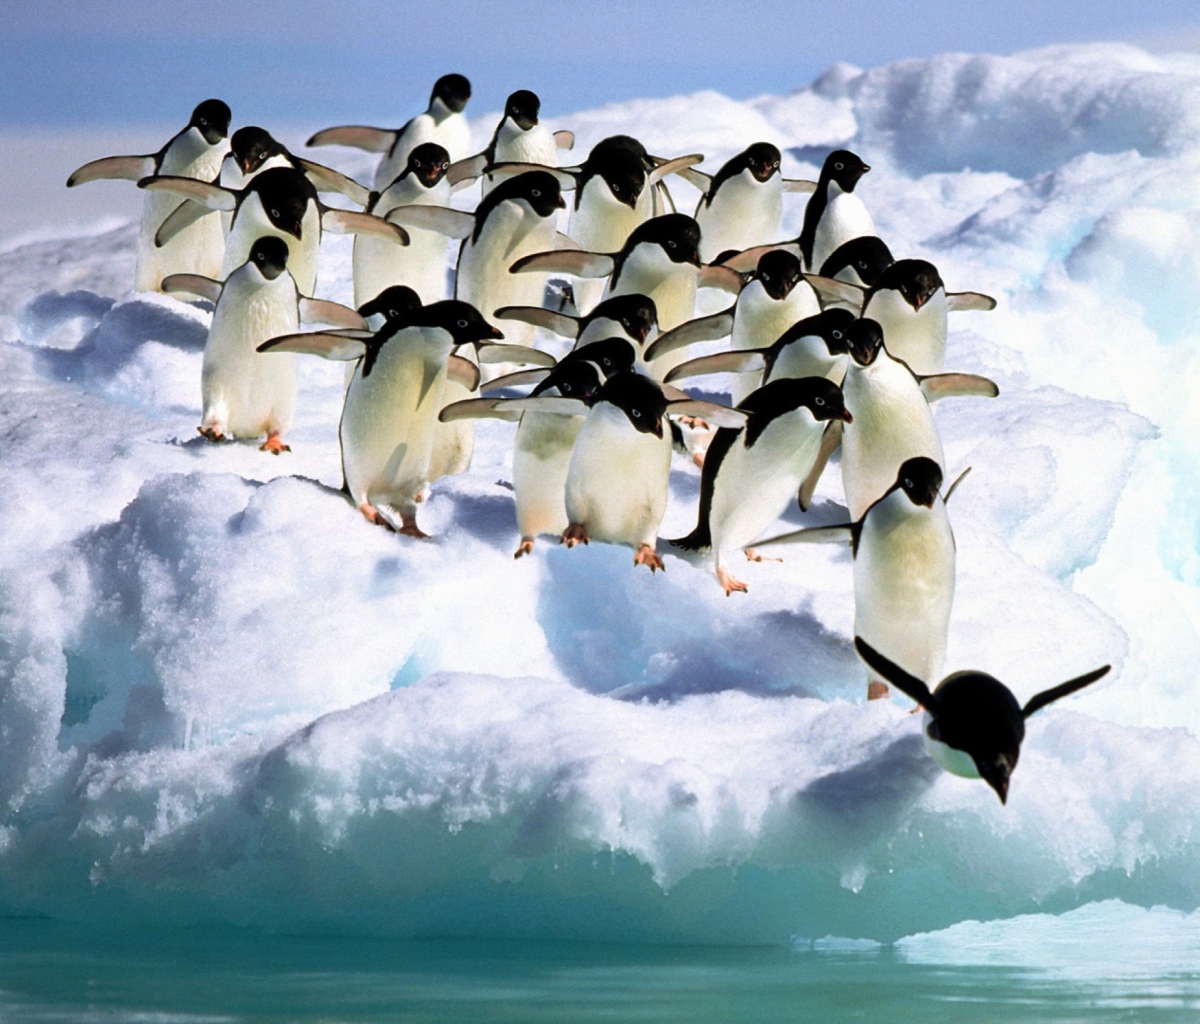 Penguins On An Iceberg wallpaper 1200x1024